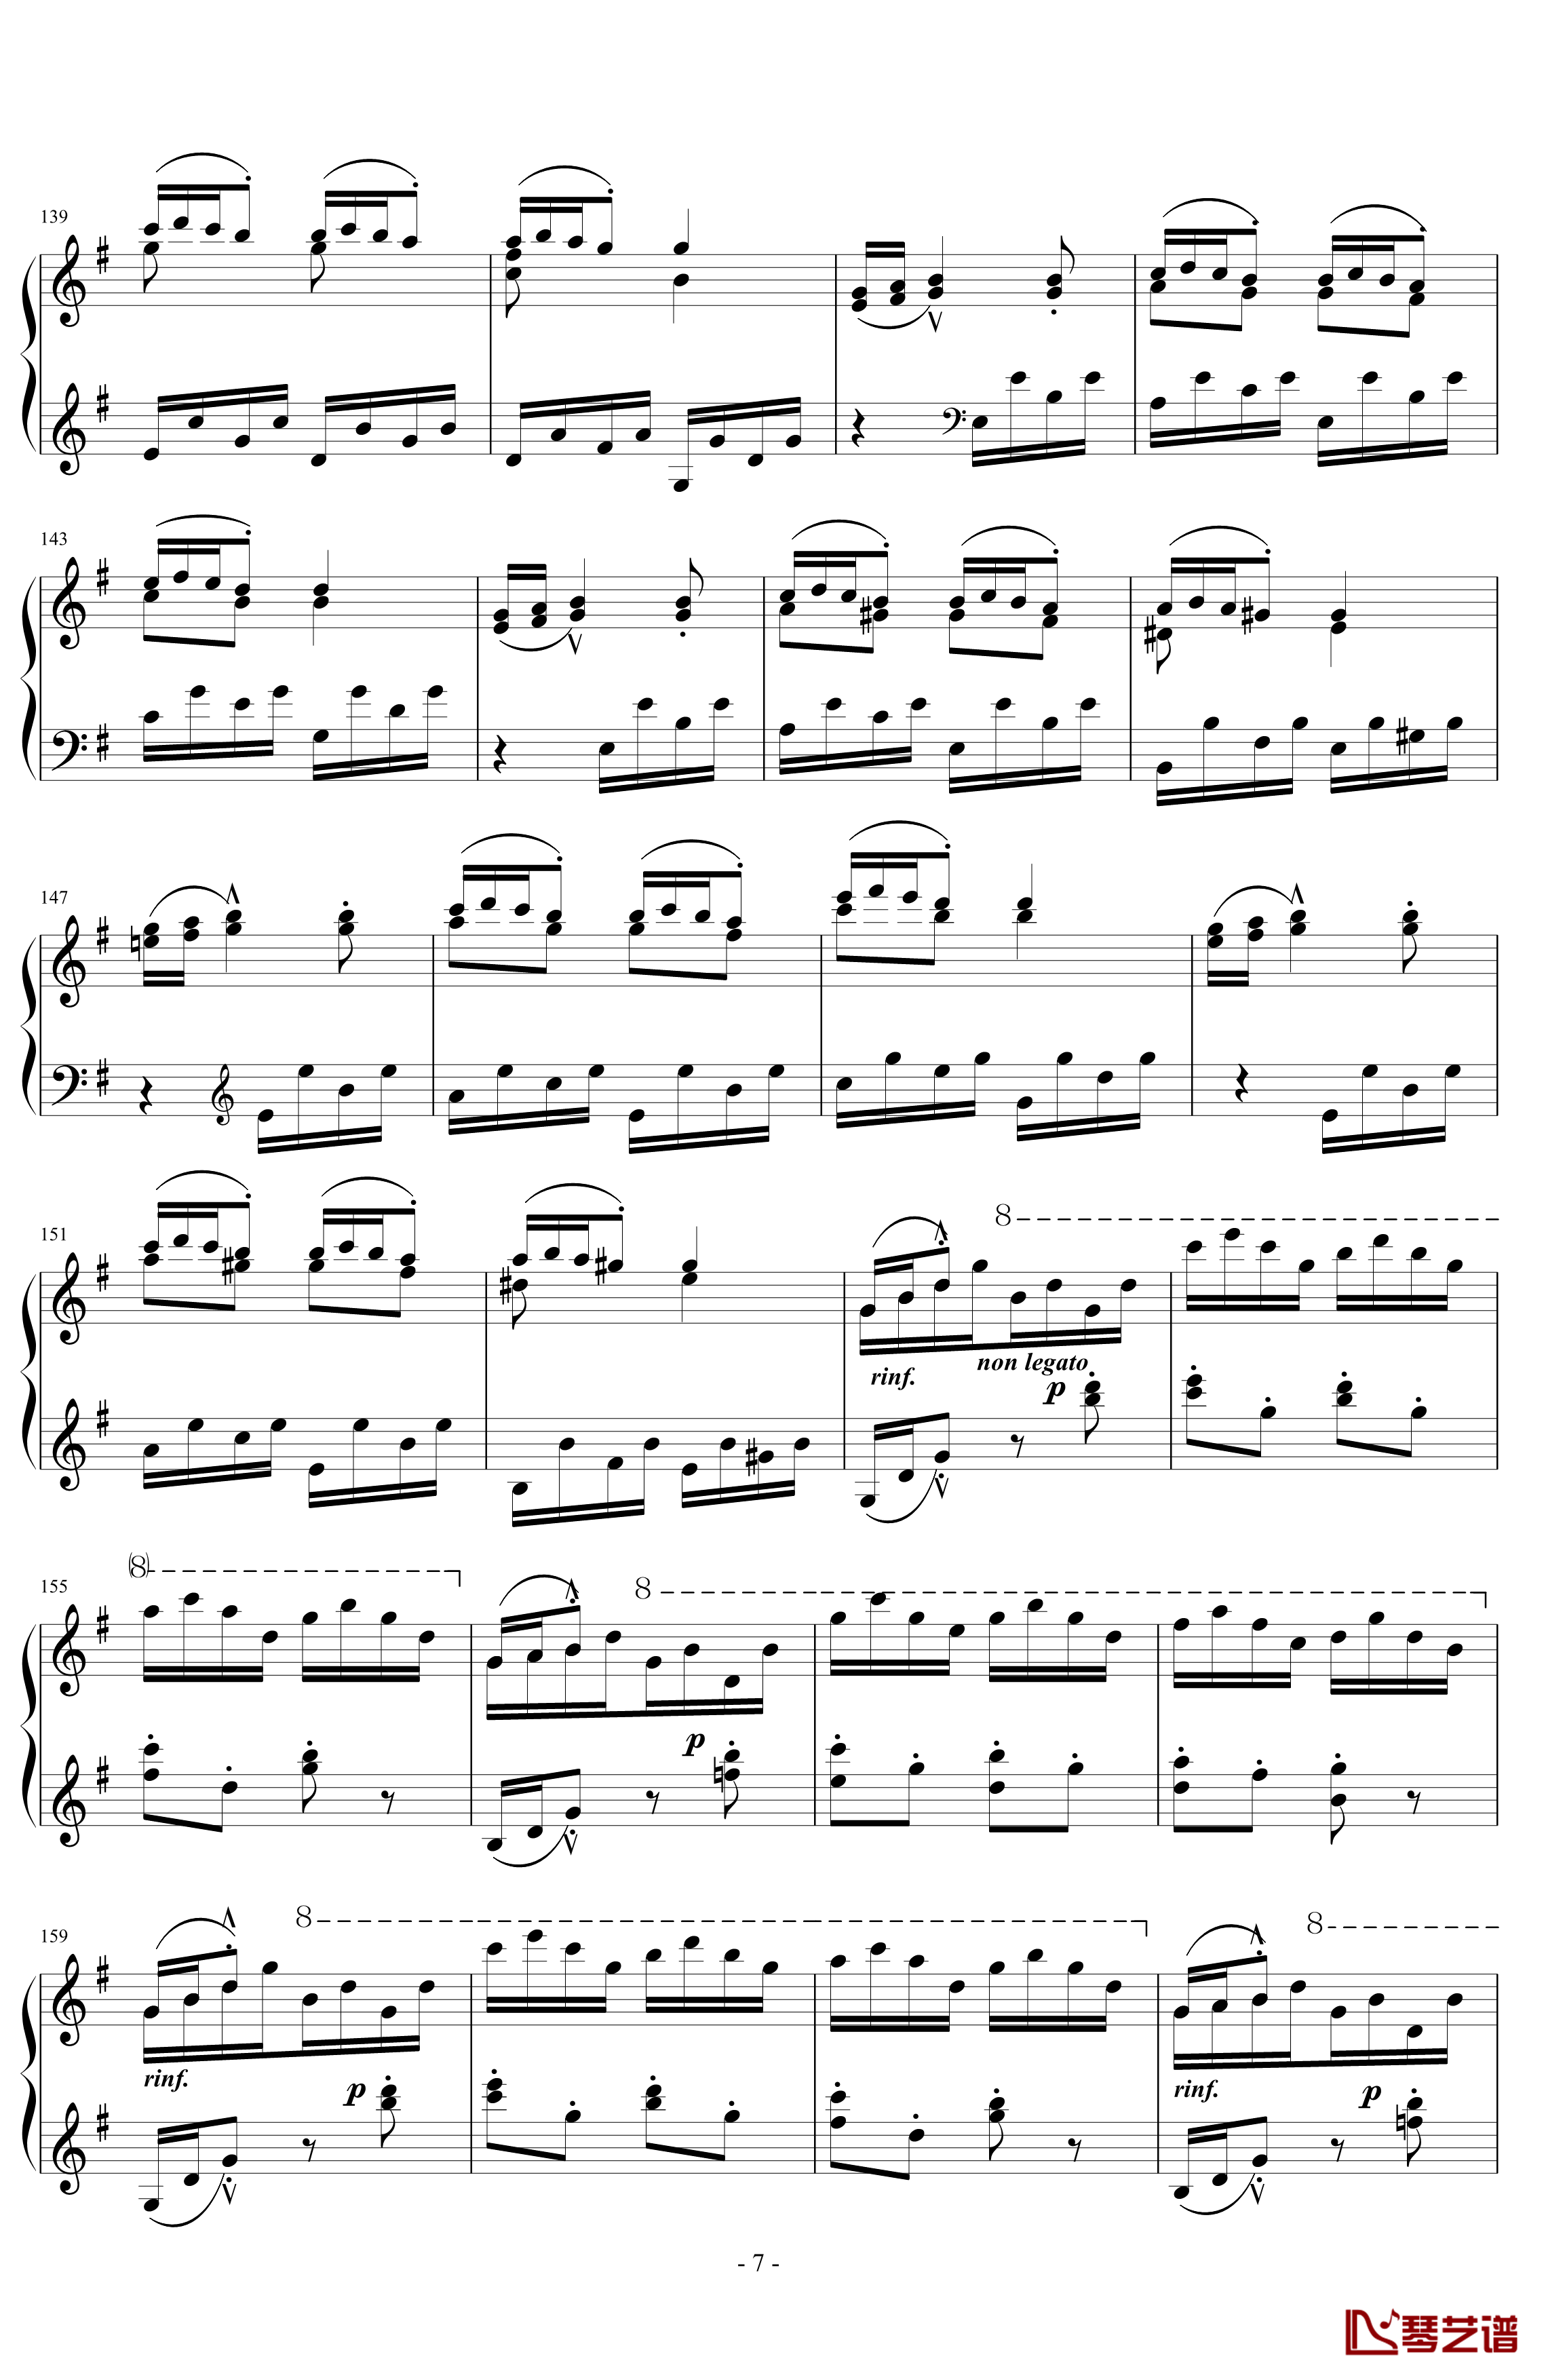 匈牙利狂想曲第7号钢琴谱-一首欢快活泼的舞曲-李斯特7